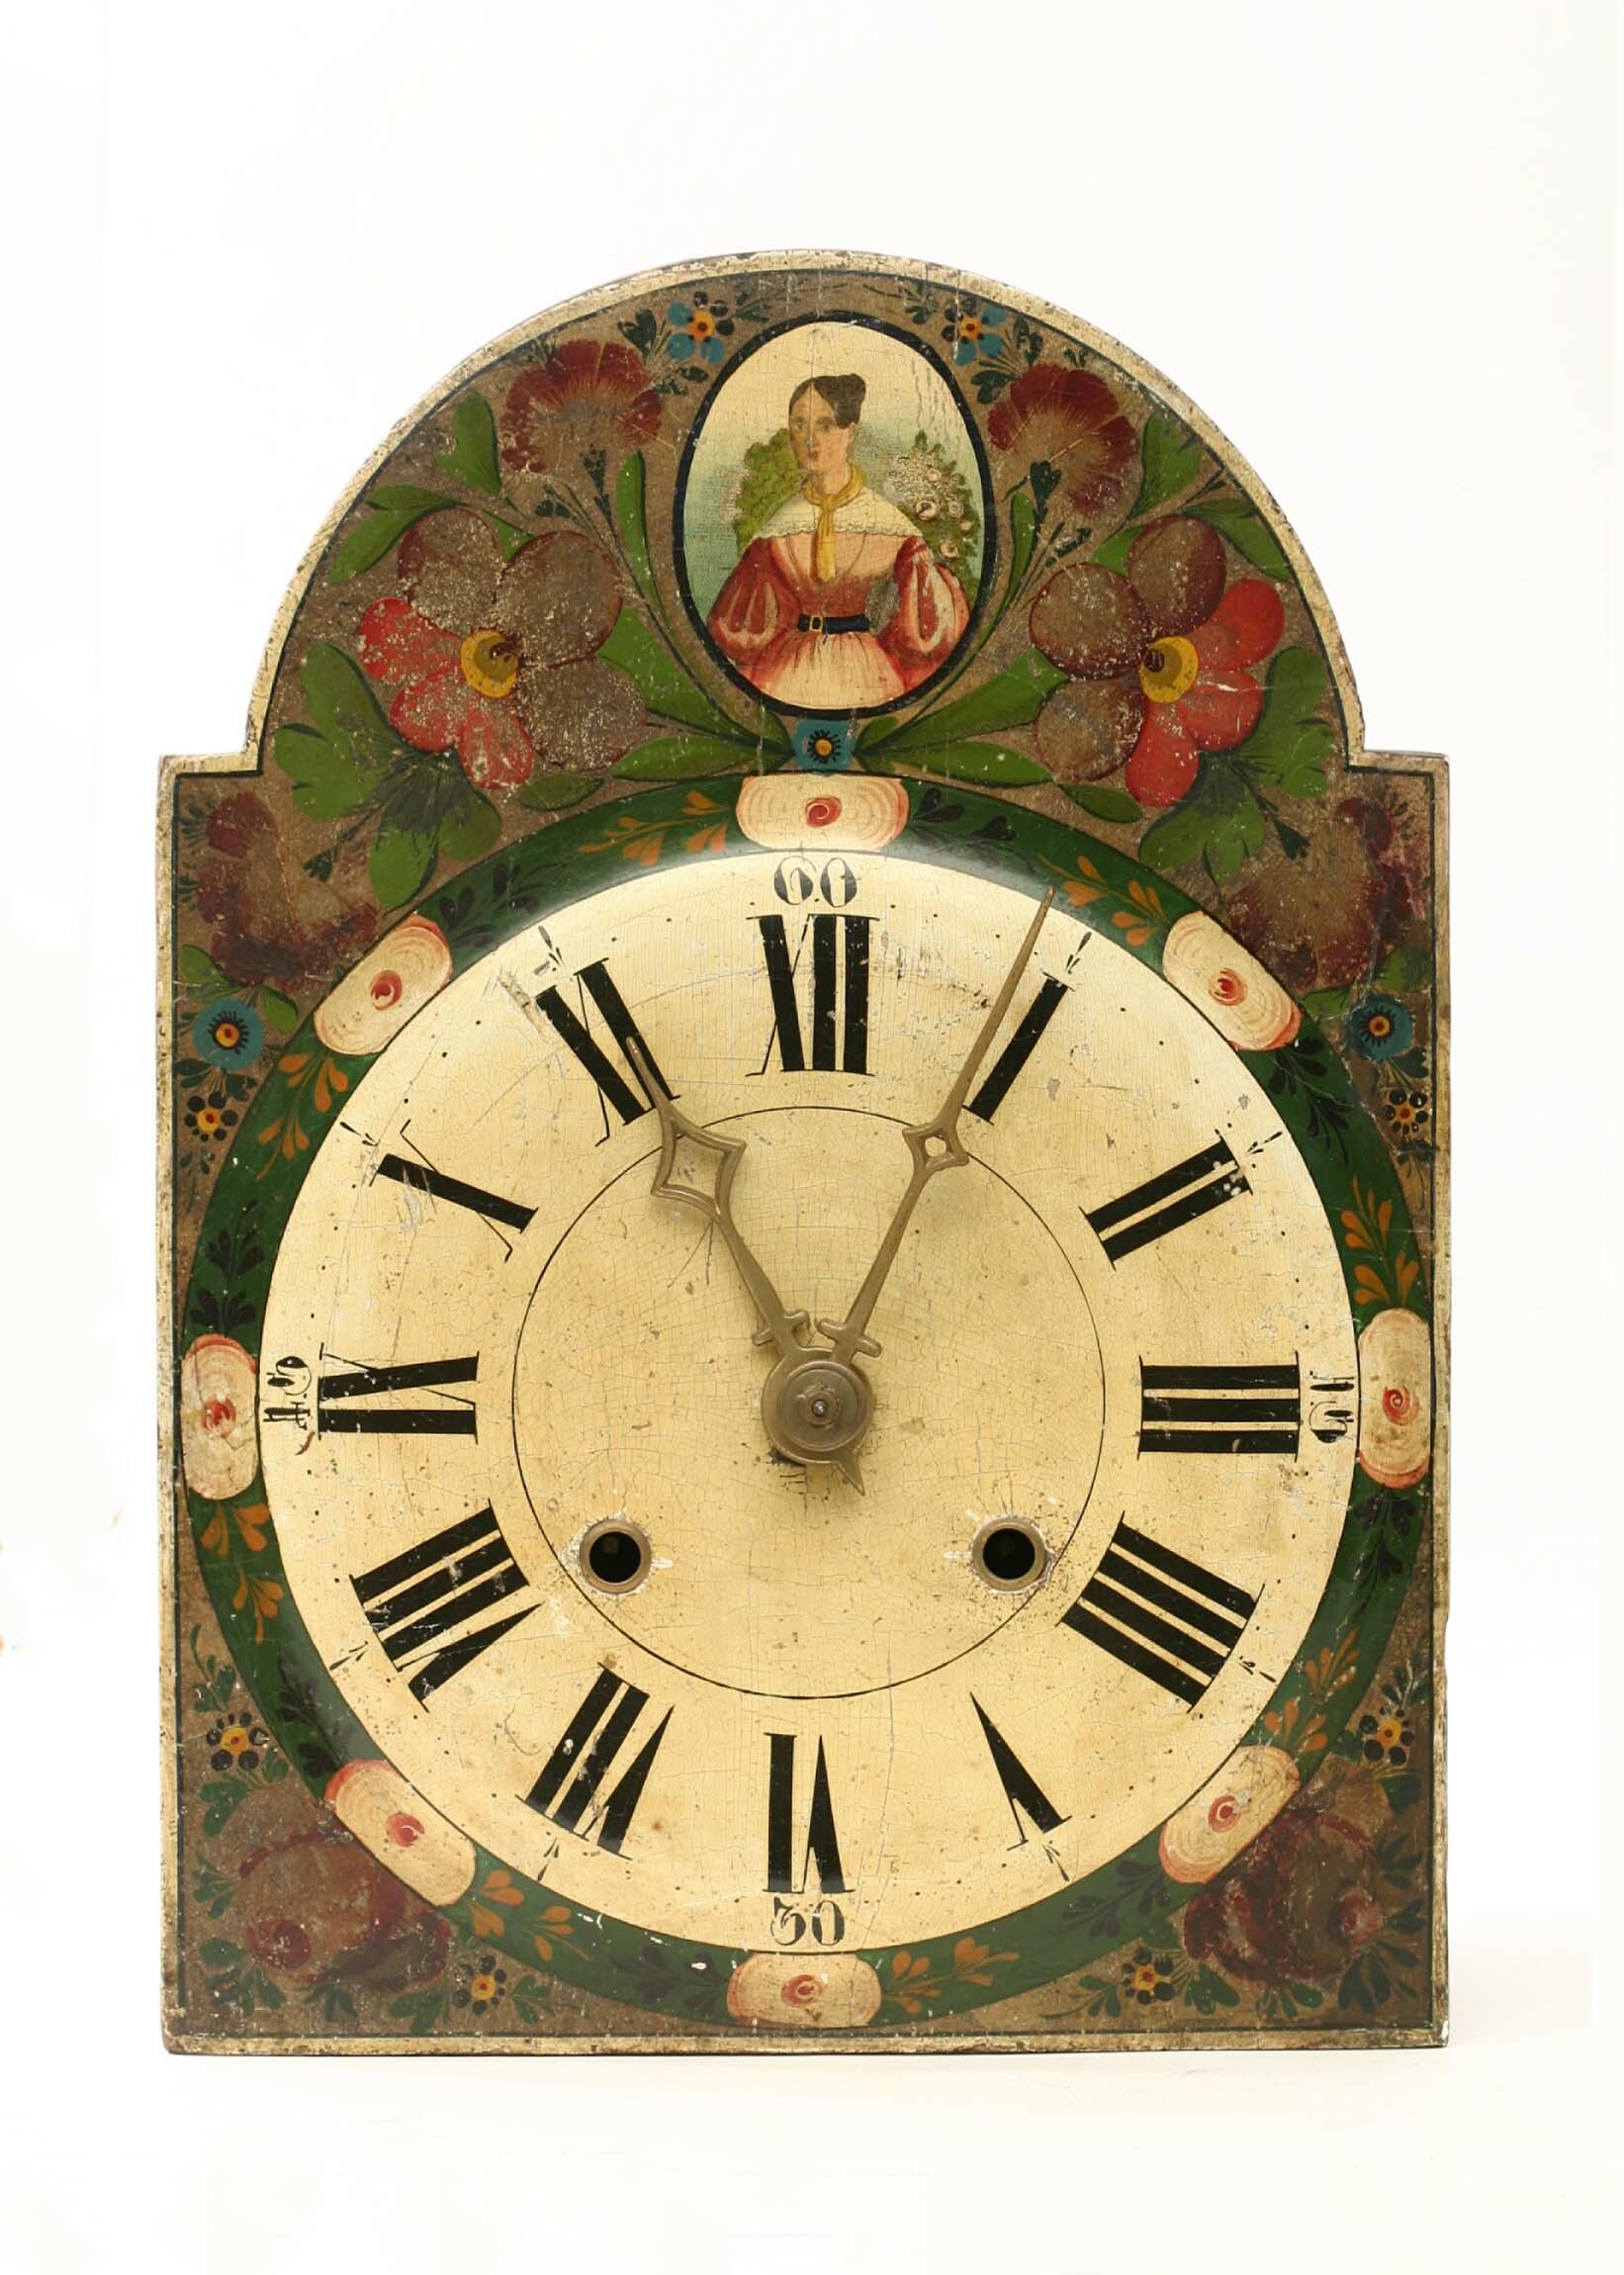 Lackschilduhr, wohl Josef Siedle, Furtwangen, um 1830 (Deutsches Uhrenmuseum CC BY-SA)